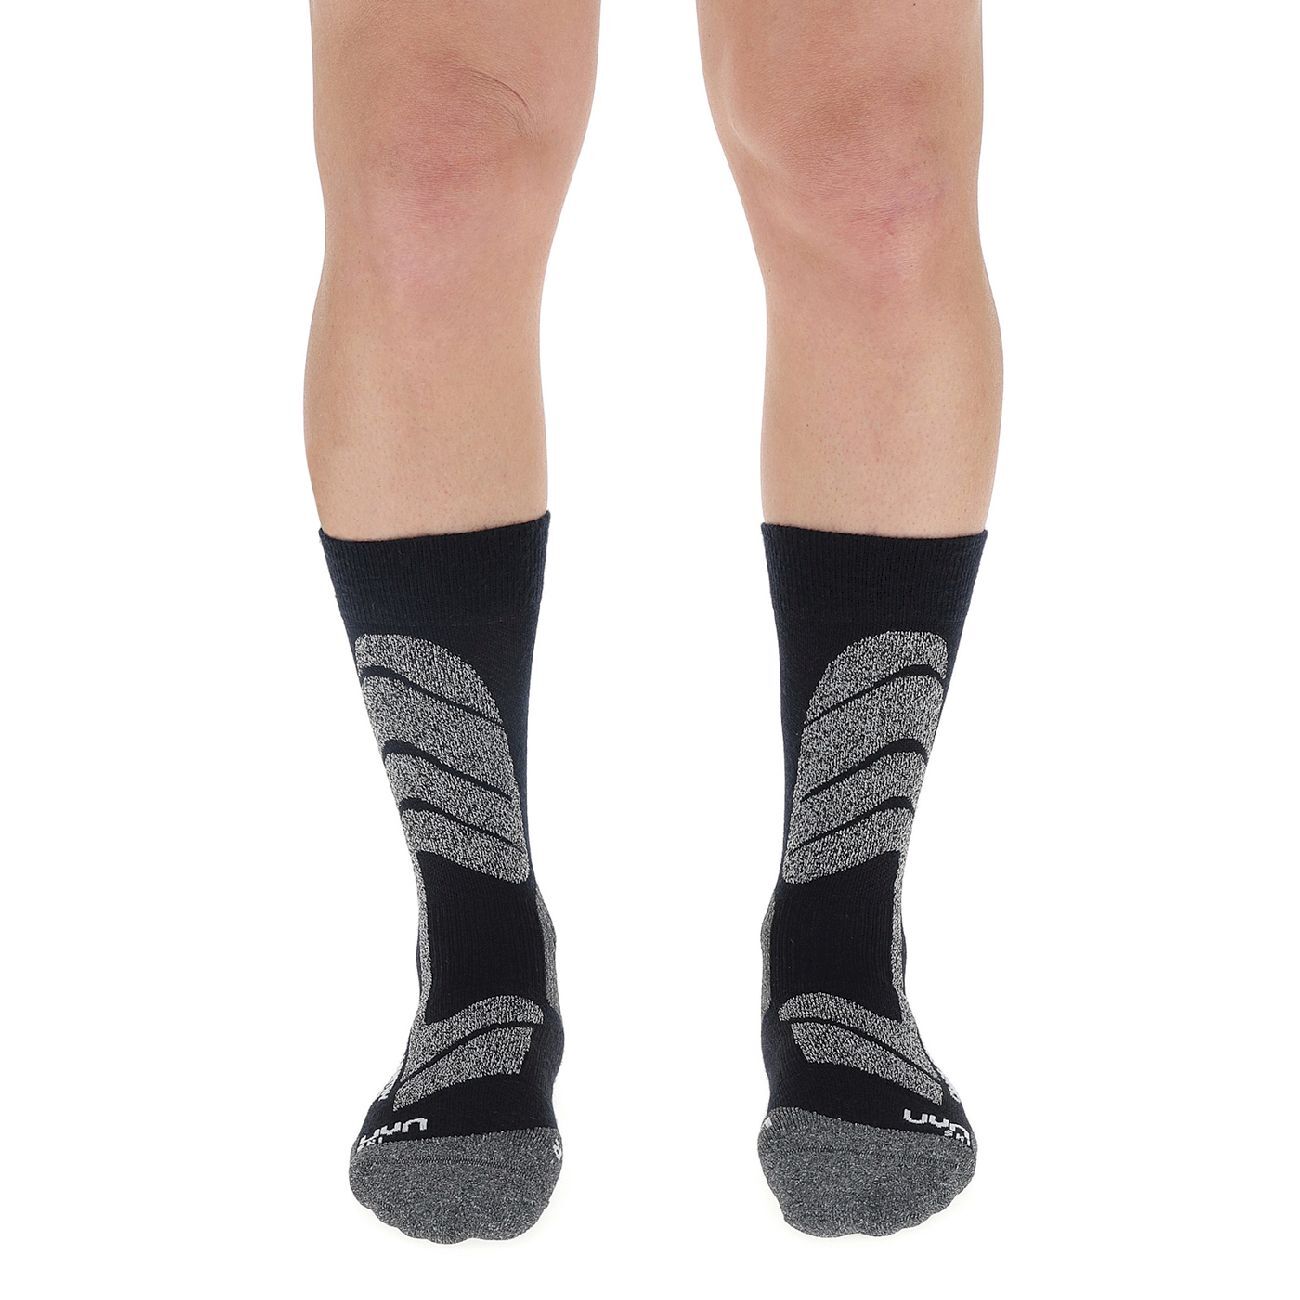 Uyn Ski Cross Country Socks - Skidstrumpor - Herr